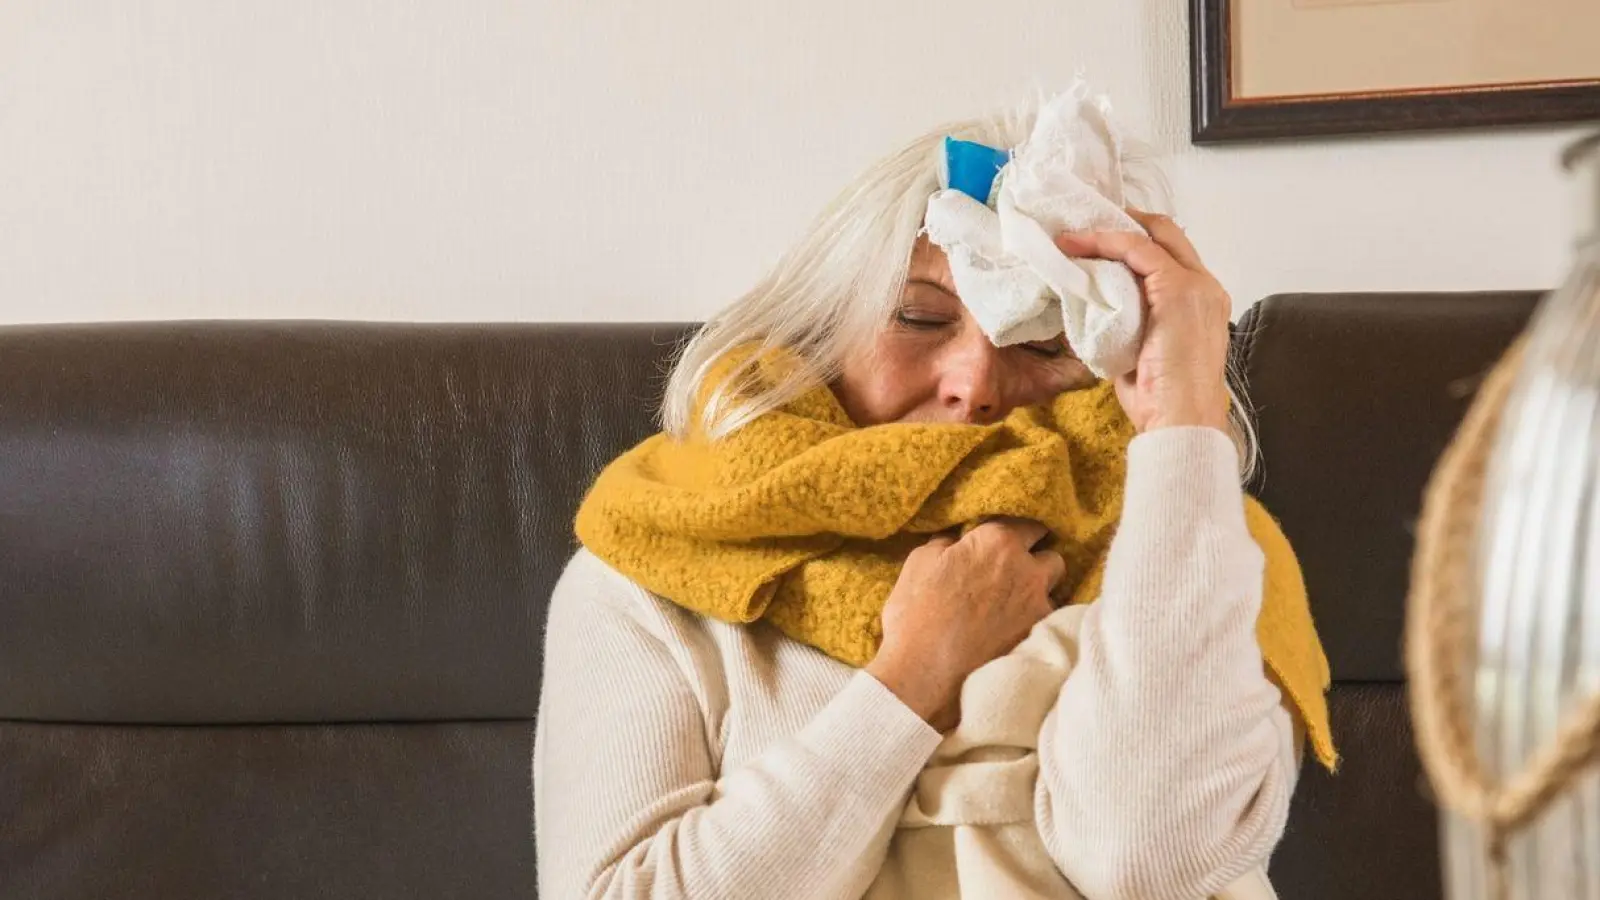 Gegen einen dicken Schädel bei einem Infekt hilft Kälte auf der Stirn - oder man nimmt eine Schmerztablette. Wer aber auch Magenbeschwerden hat, sollte genau auf den Wirkstoff schauen. (Foto: Christin Klose/dpa-tmn)